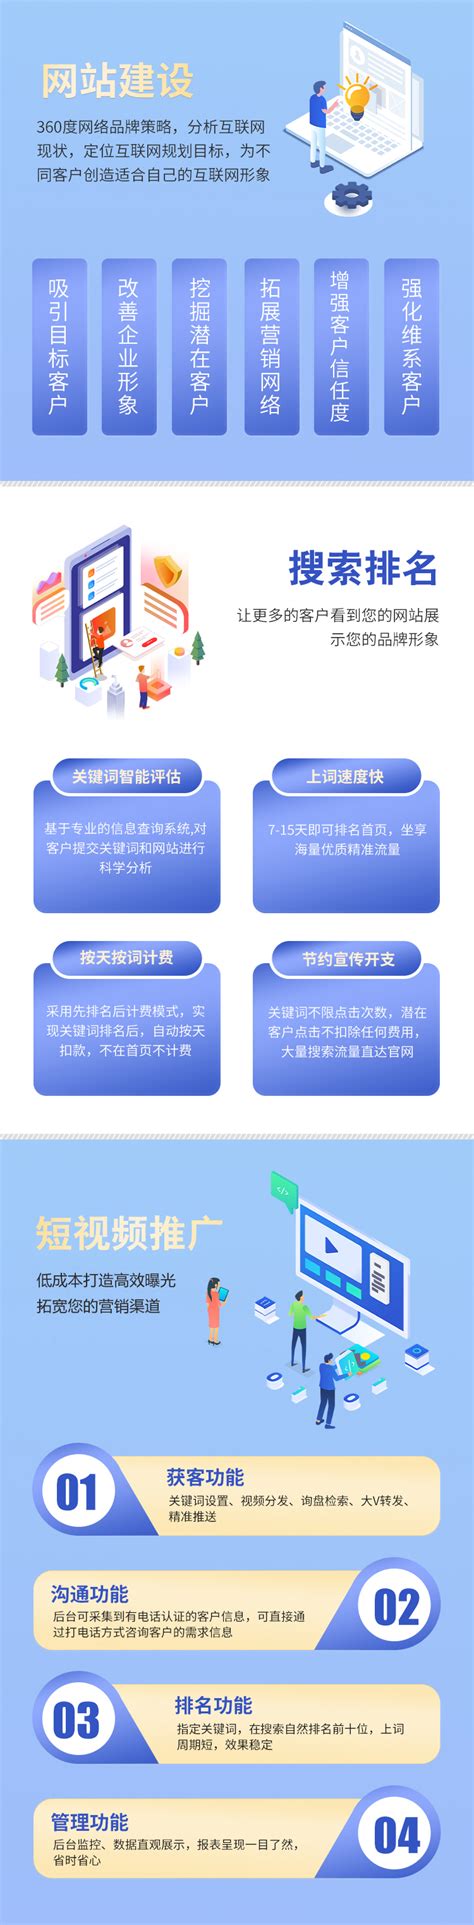 浙江网站网络推广服务电话